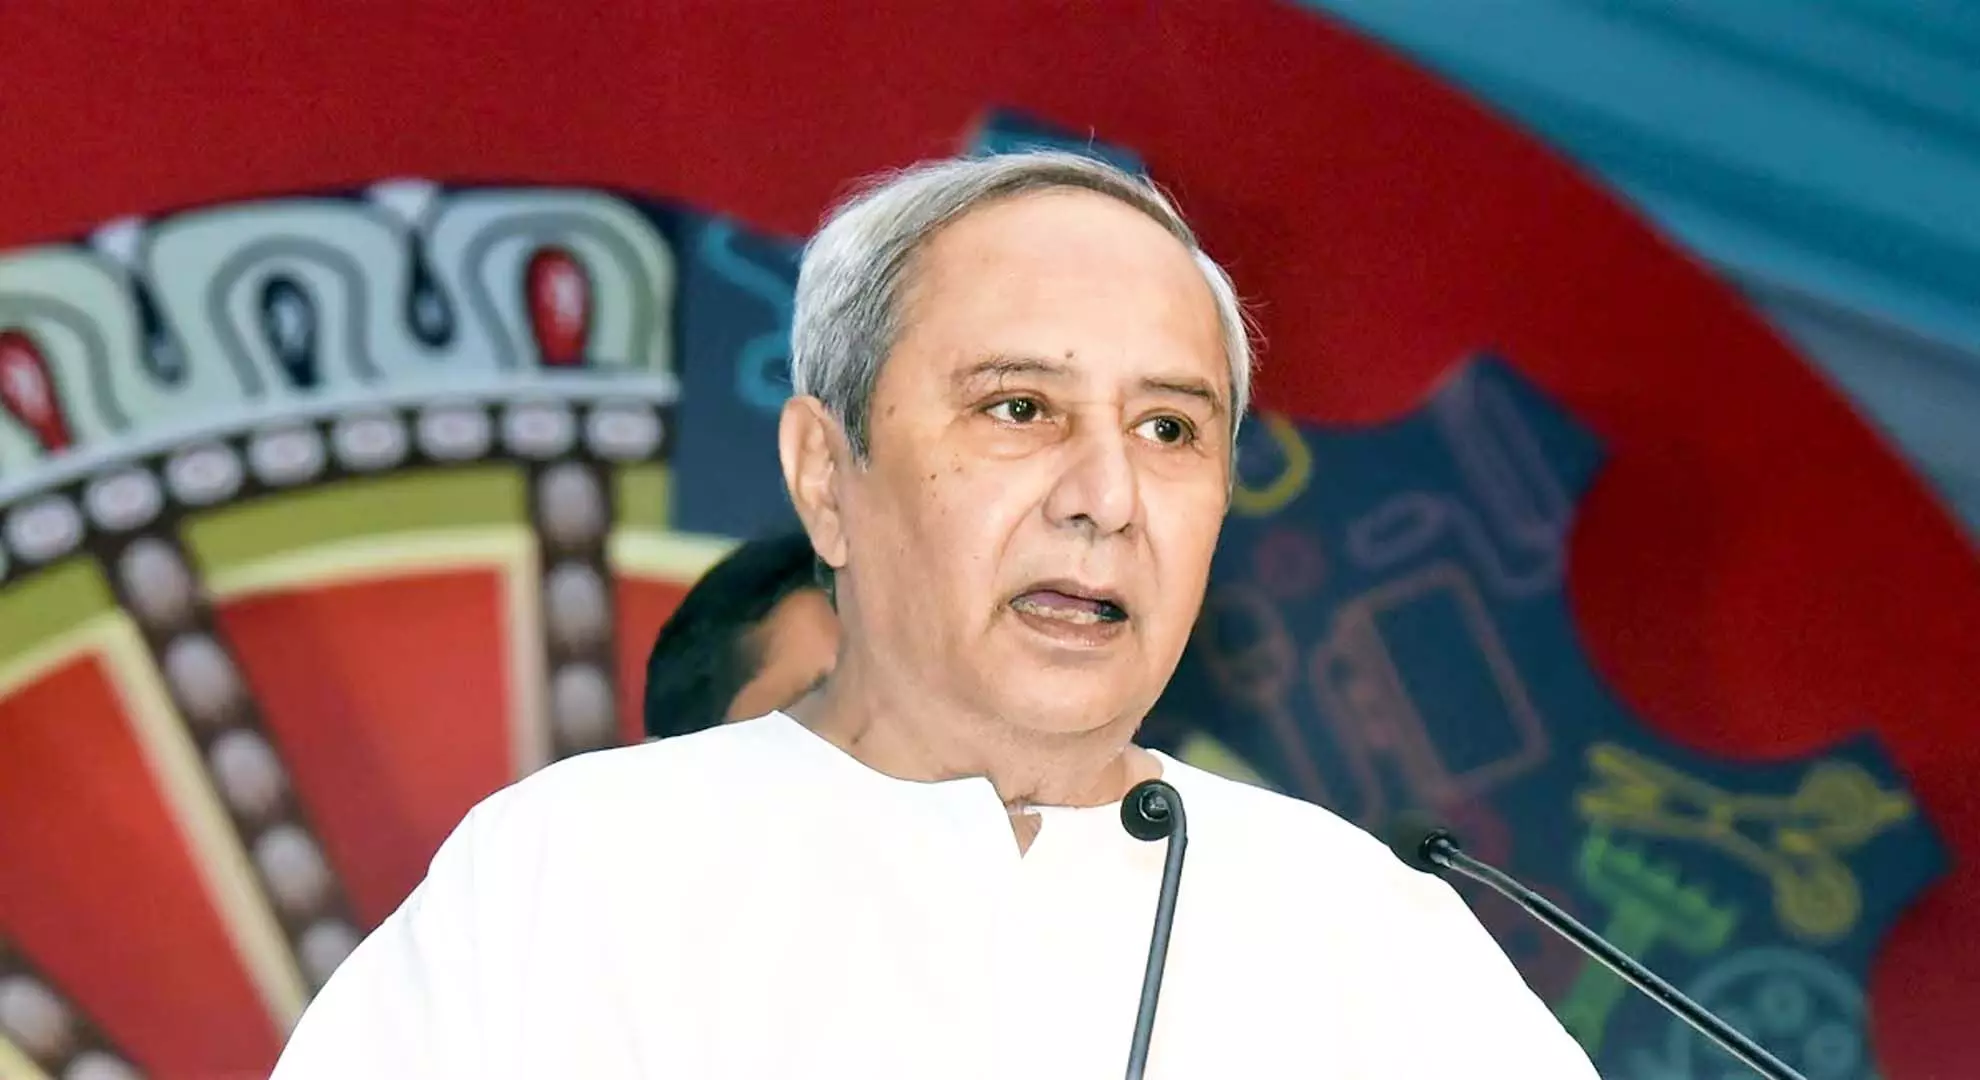 अंग दाताओं का राजकीय सम्मान के साथ अंतिम संस्कार किया जाएगा: ओडिशा के मुख्यमंत्री नवीन पटनायक